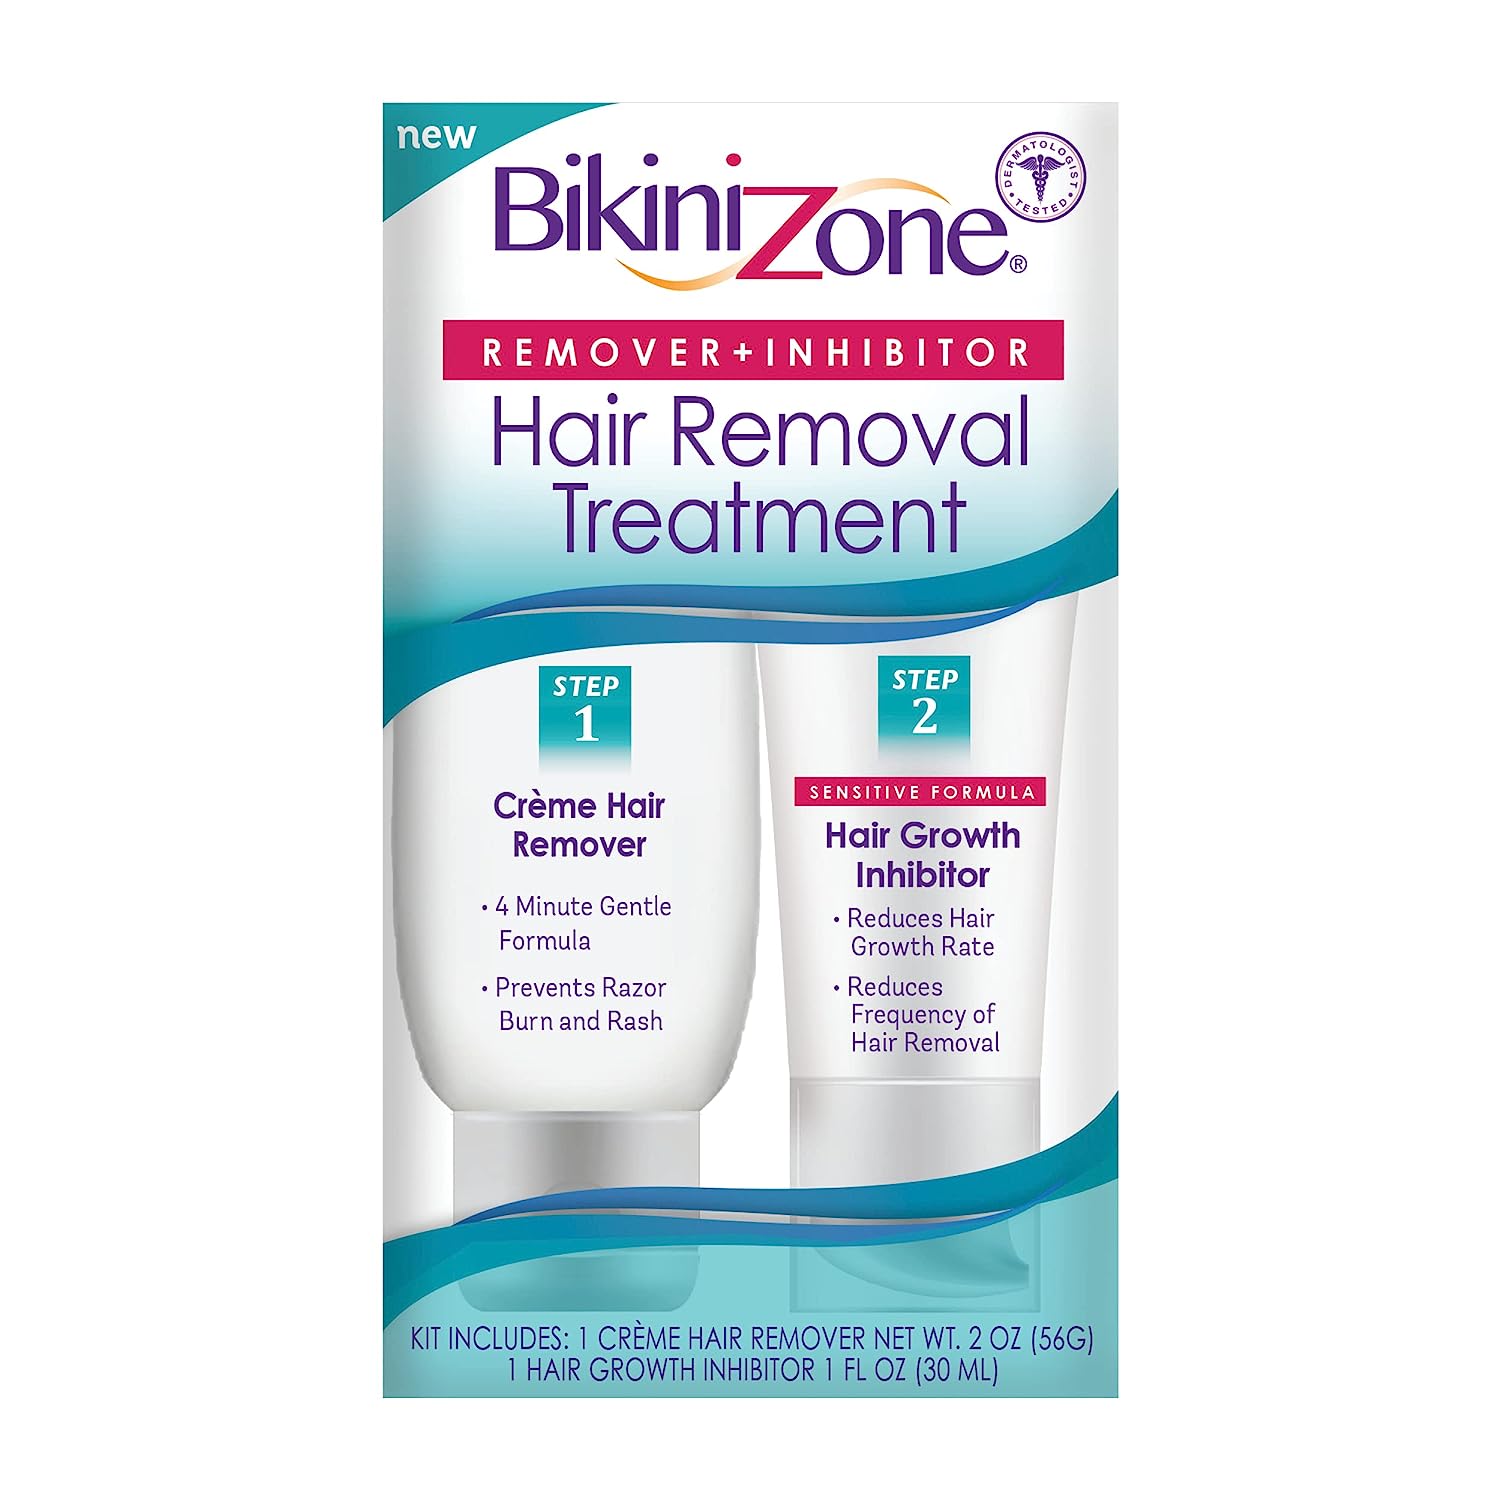 bikinizone hair removal treatment kit